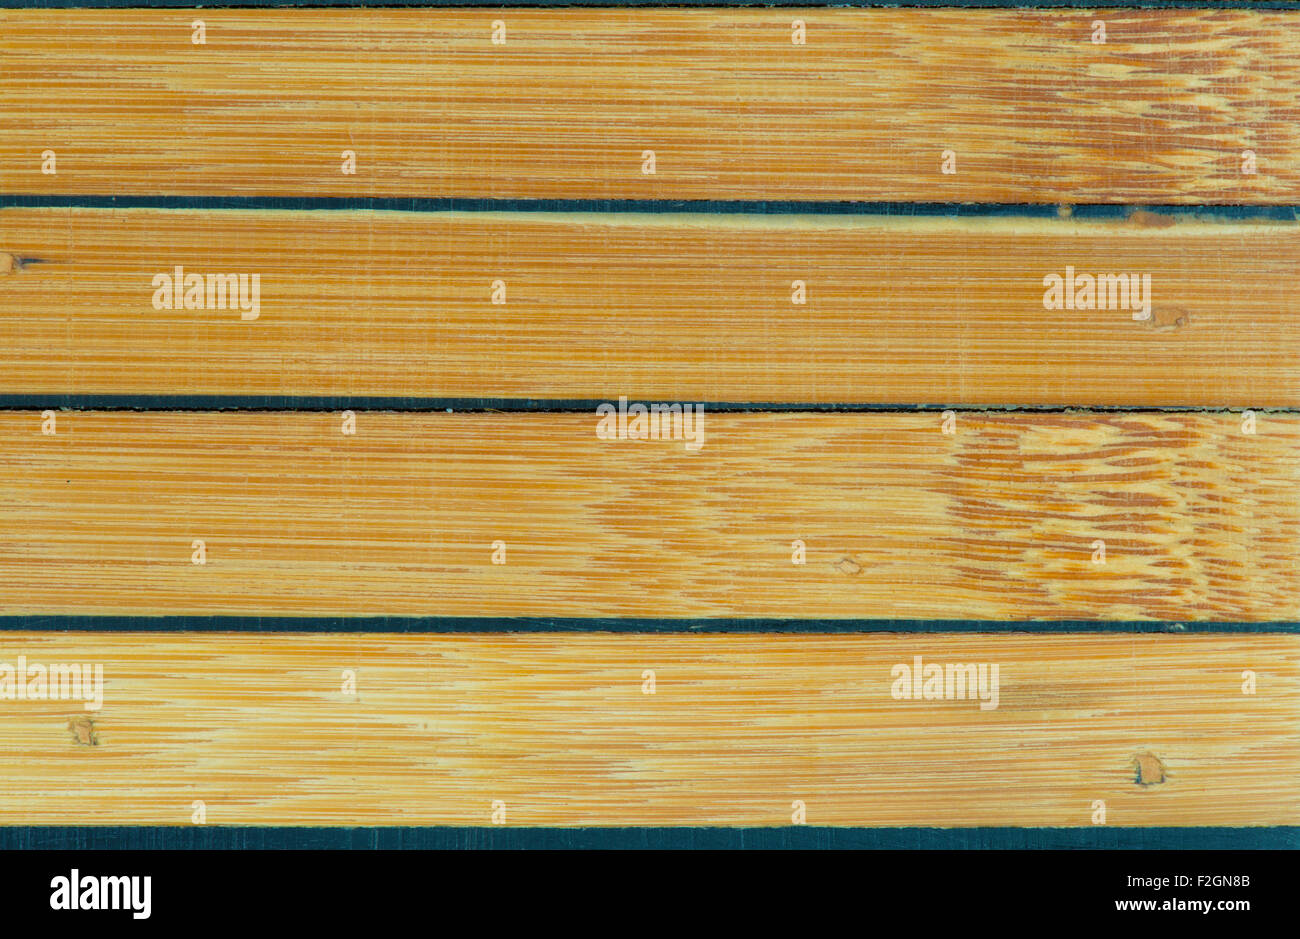 Bamboo pattern for household kitchen utensil Stock Photo